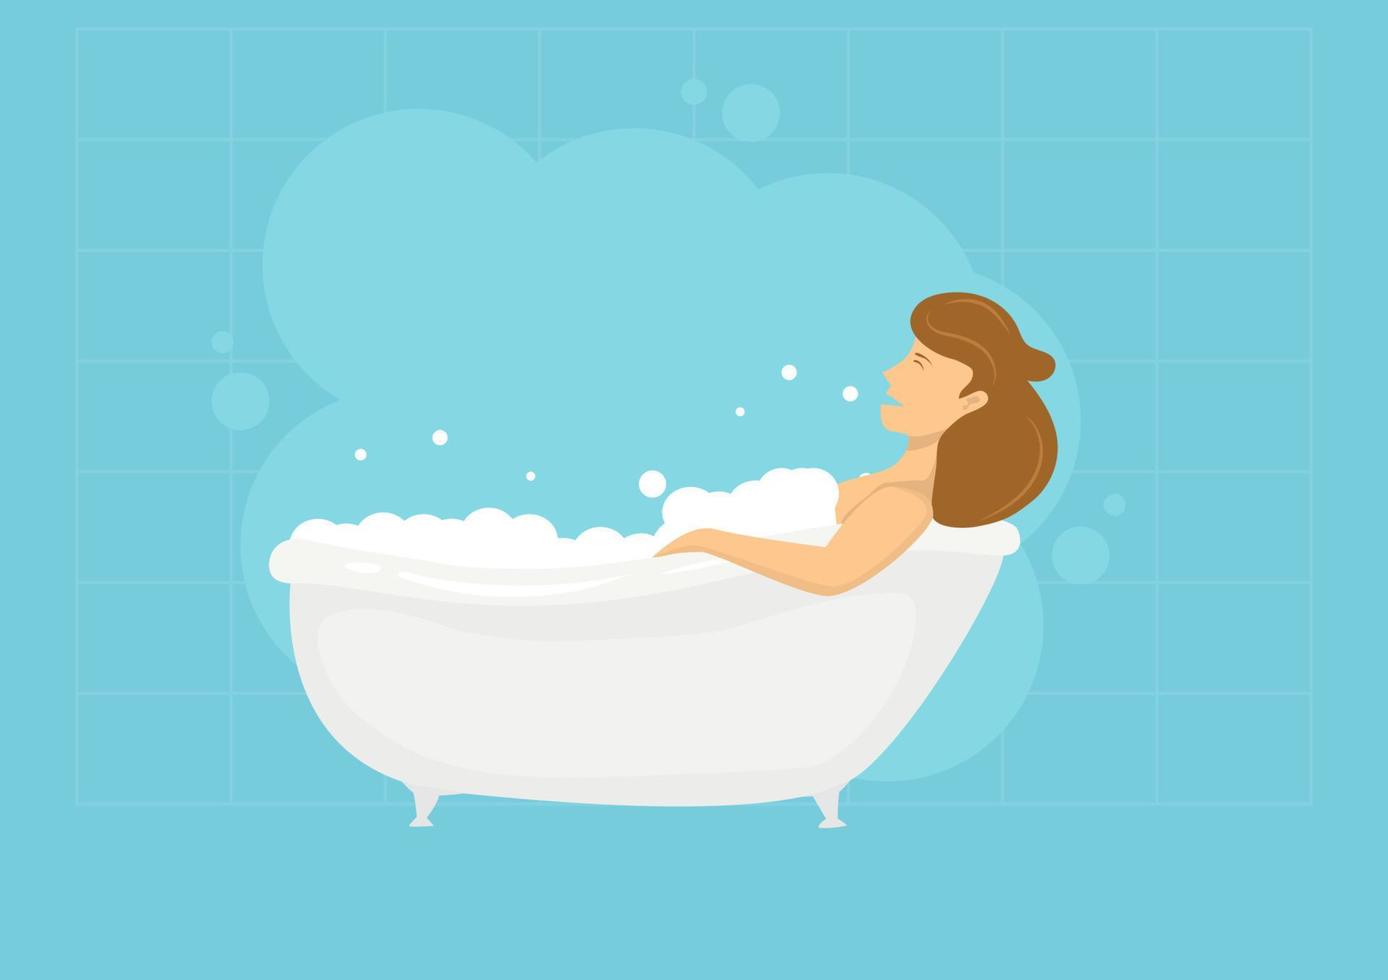 mujer tomando un baño lleno de burbujas de jabón ideas de diseño relajado. ilustración de dibujos animados plana. vector